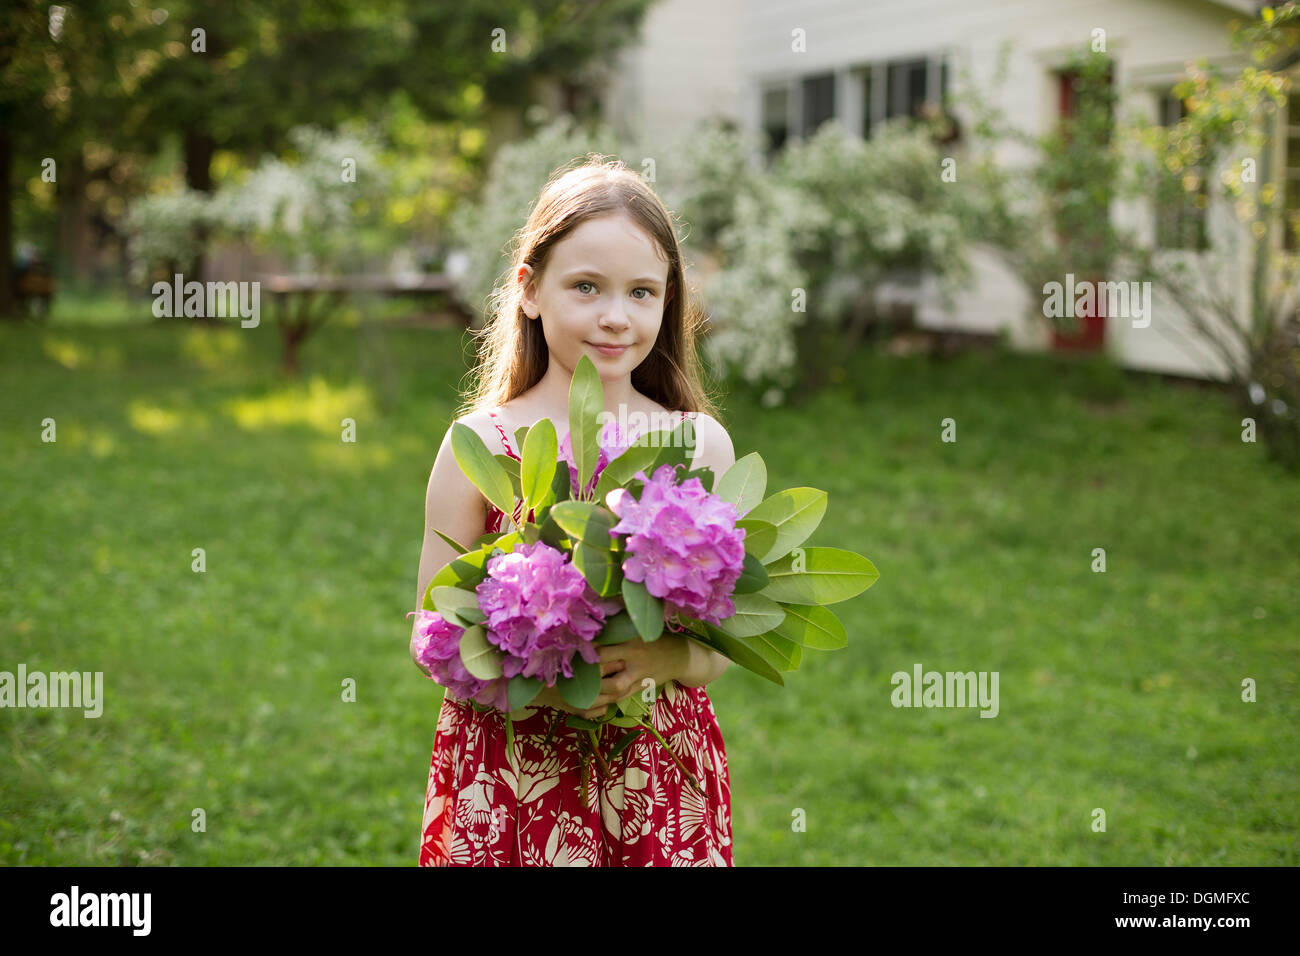 Ein junges Mädchen hält eine Reihe von lila Hortensie Flowerheads. Stockfoto